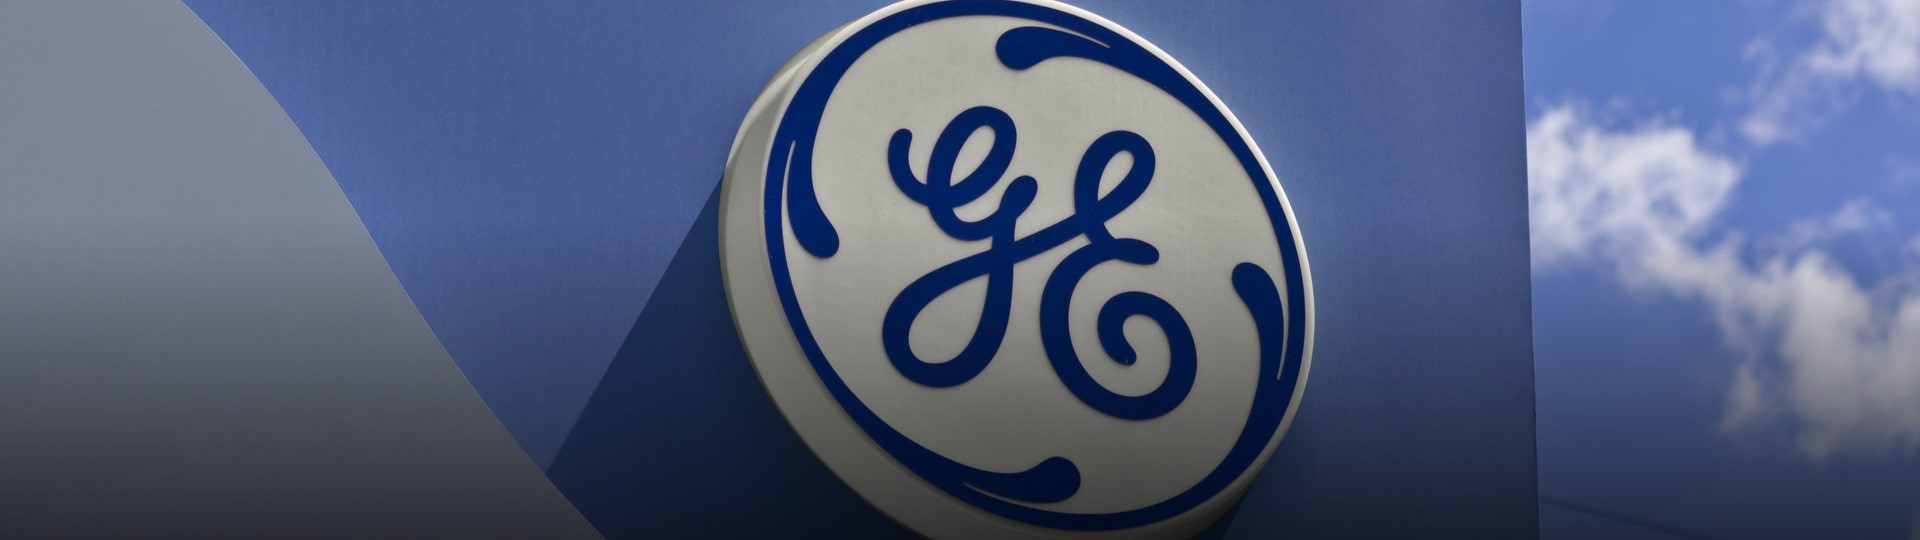 Průmyslový konglomerát General Electric se ve čtvrtletí propadl do ztráty